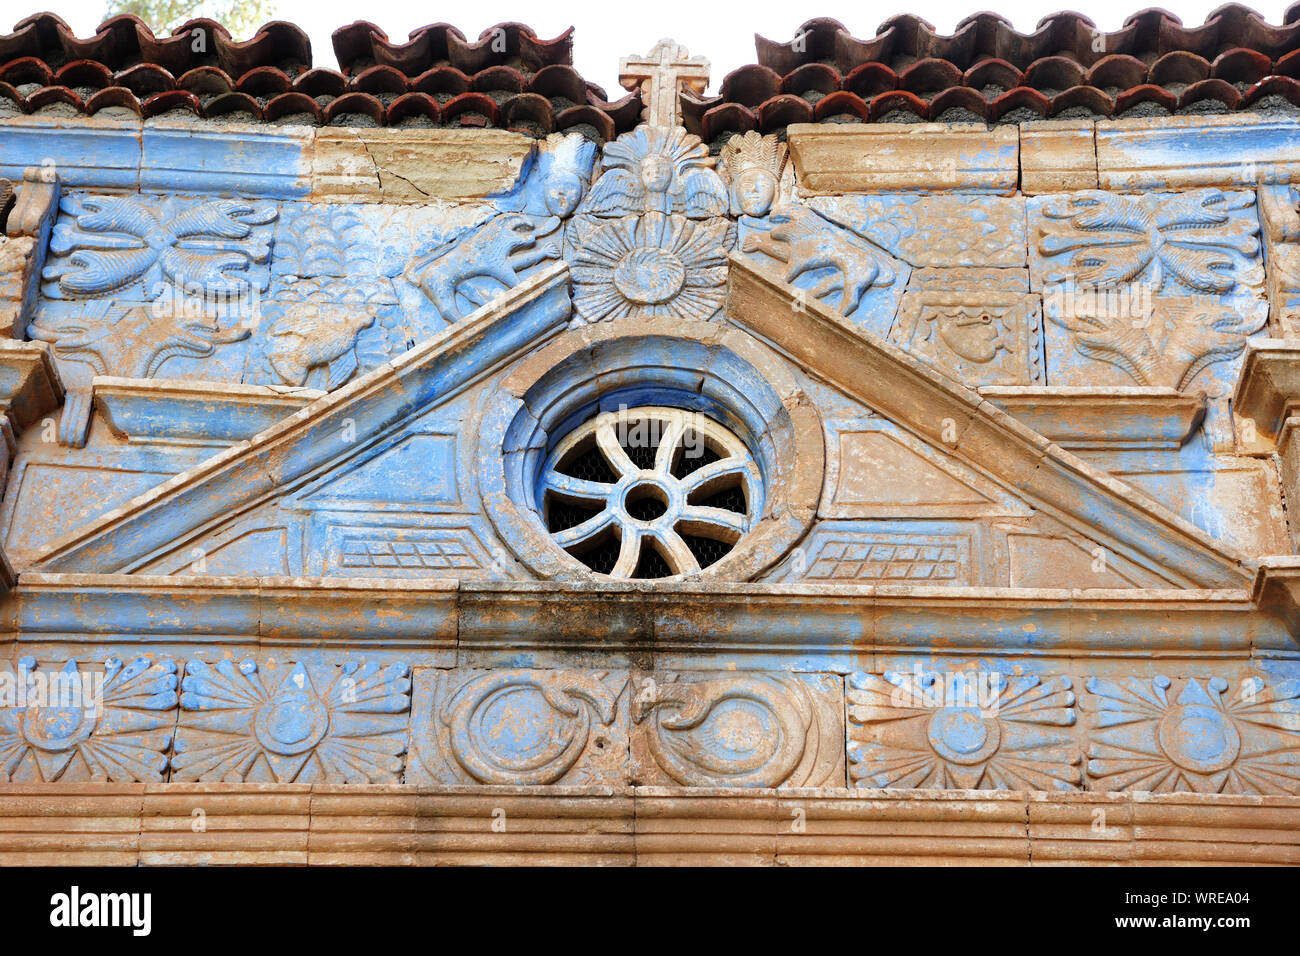 Symboles aztèques dans l'église de Pájara. Fuerteventura, îles Canaries. Espagne Banque D'Images